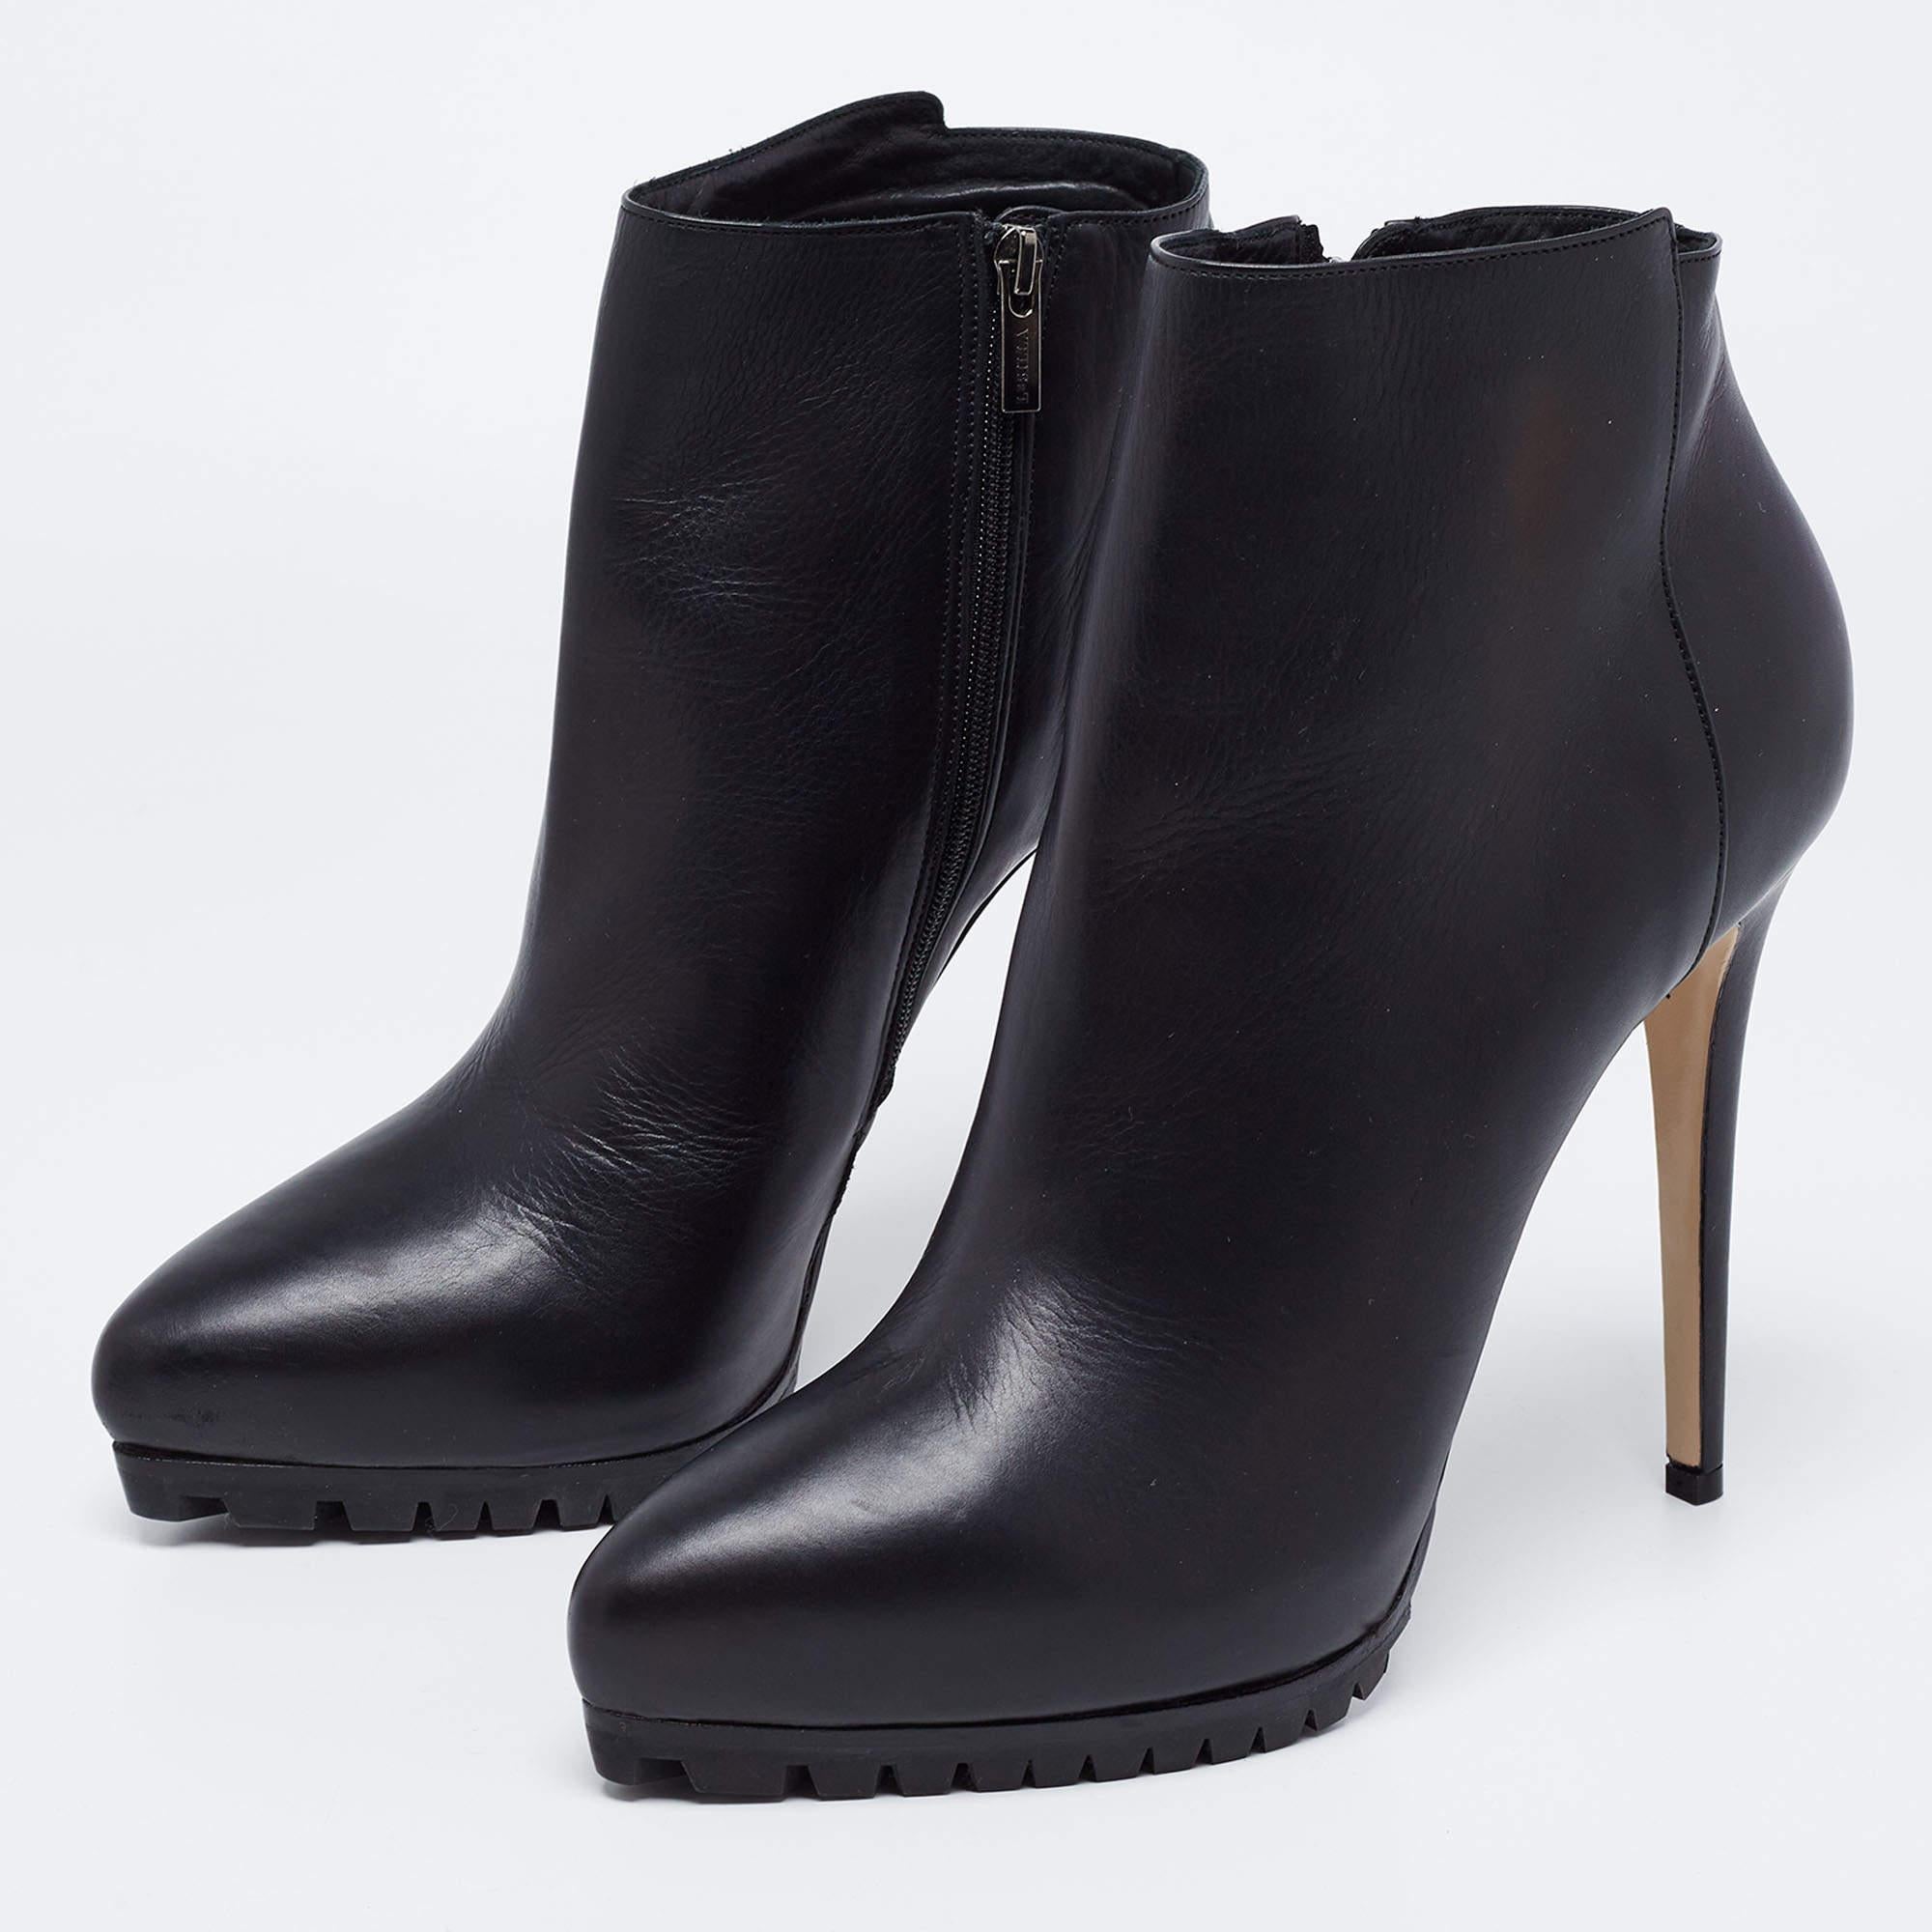 Le Silla Black Leather Platform Ankle Boots Size 40 4